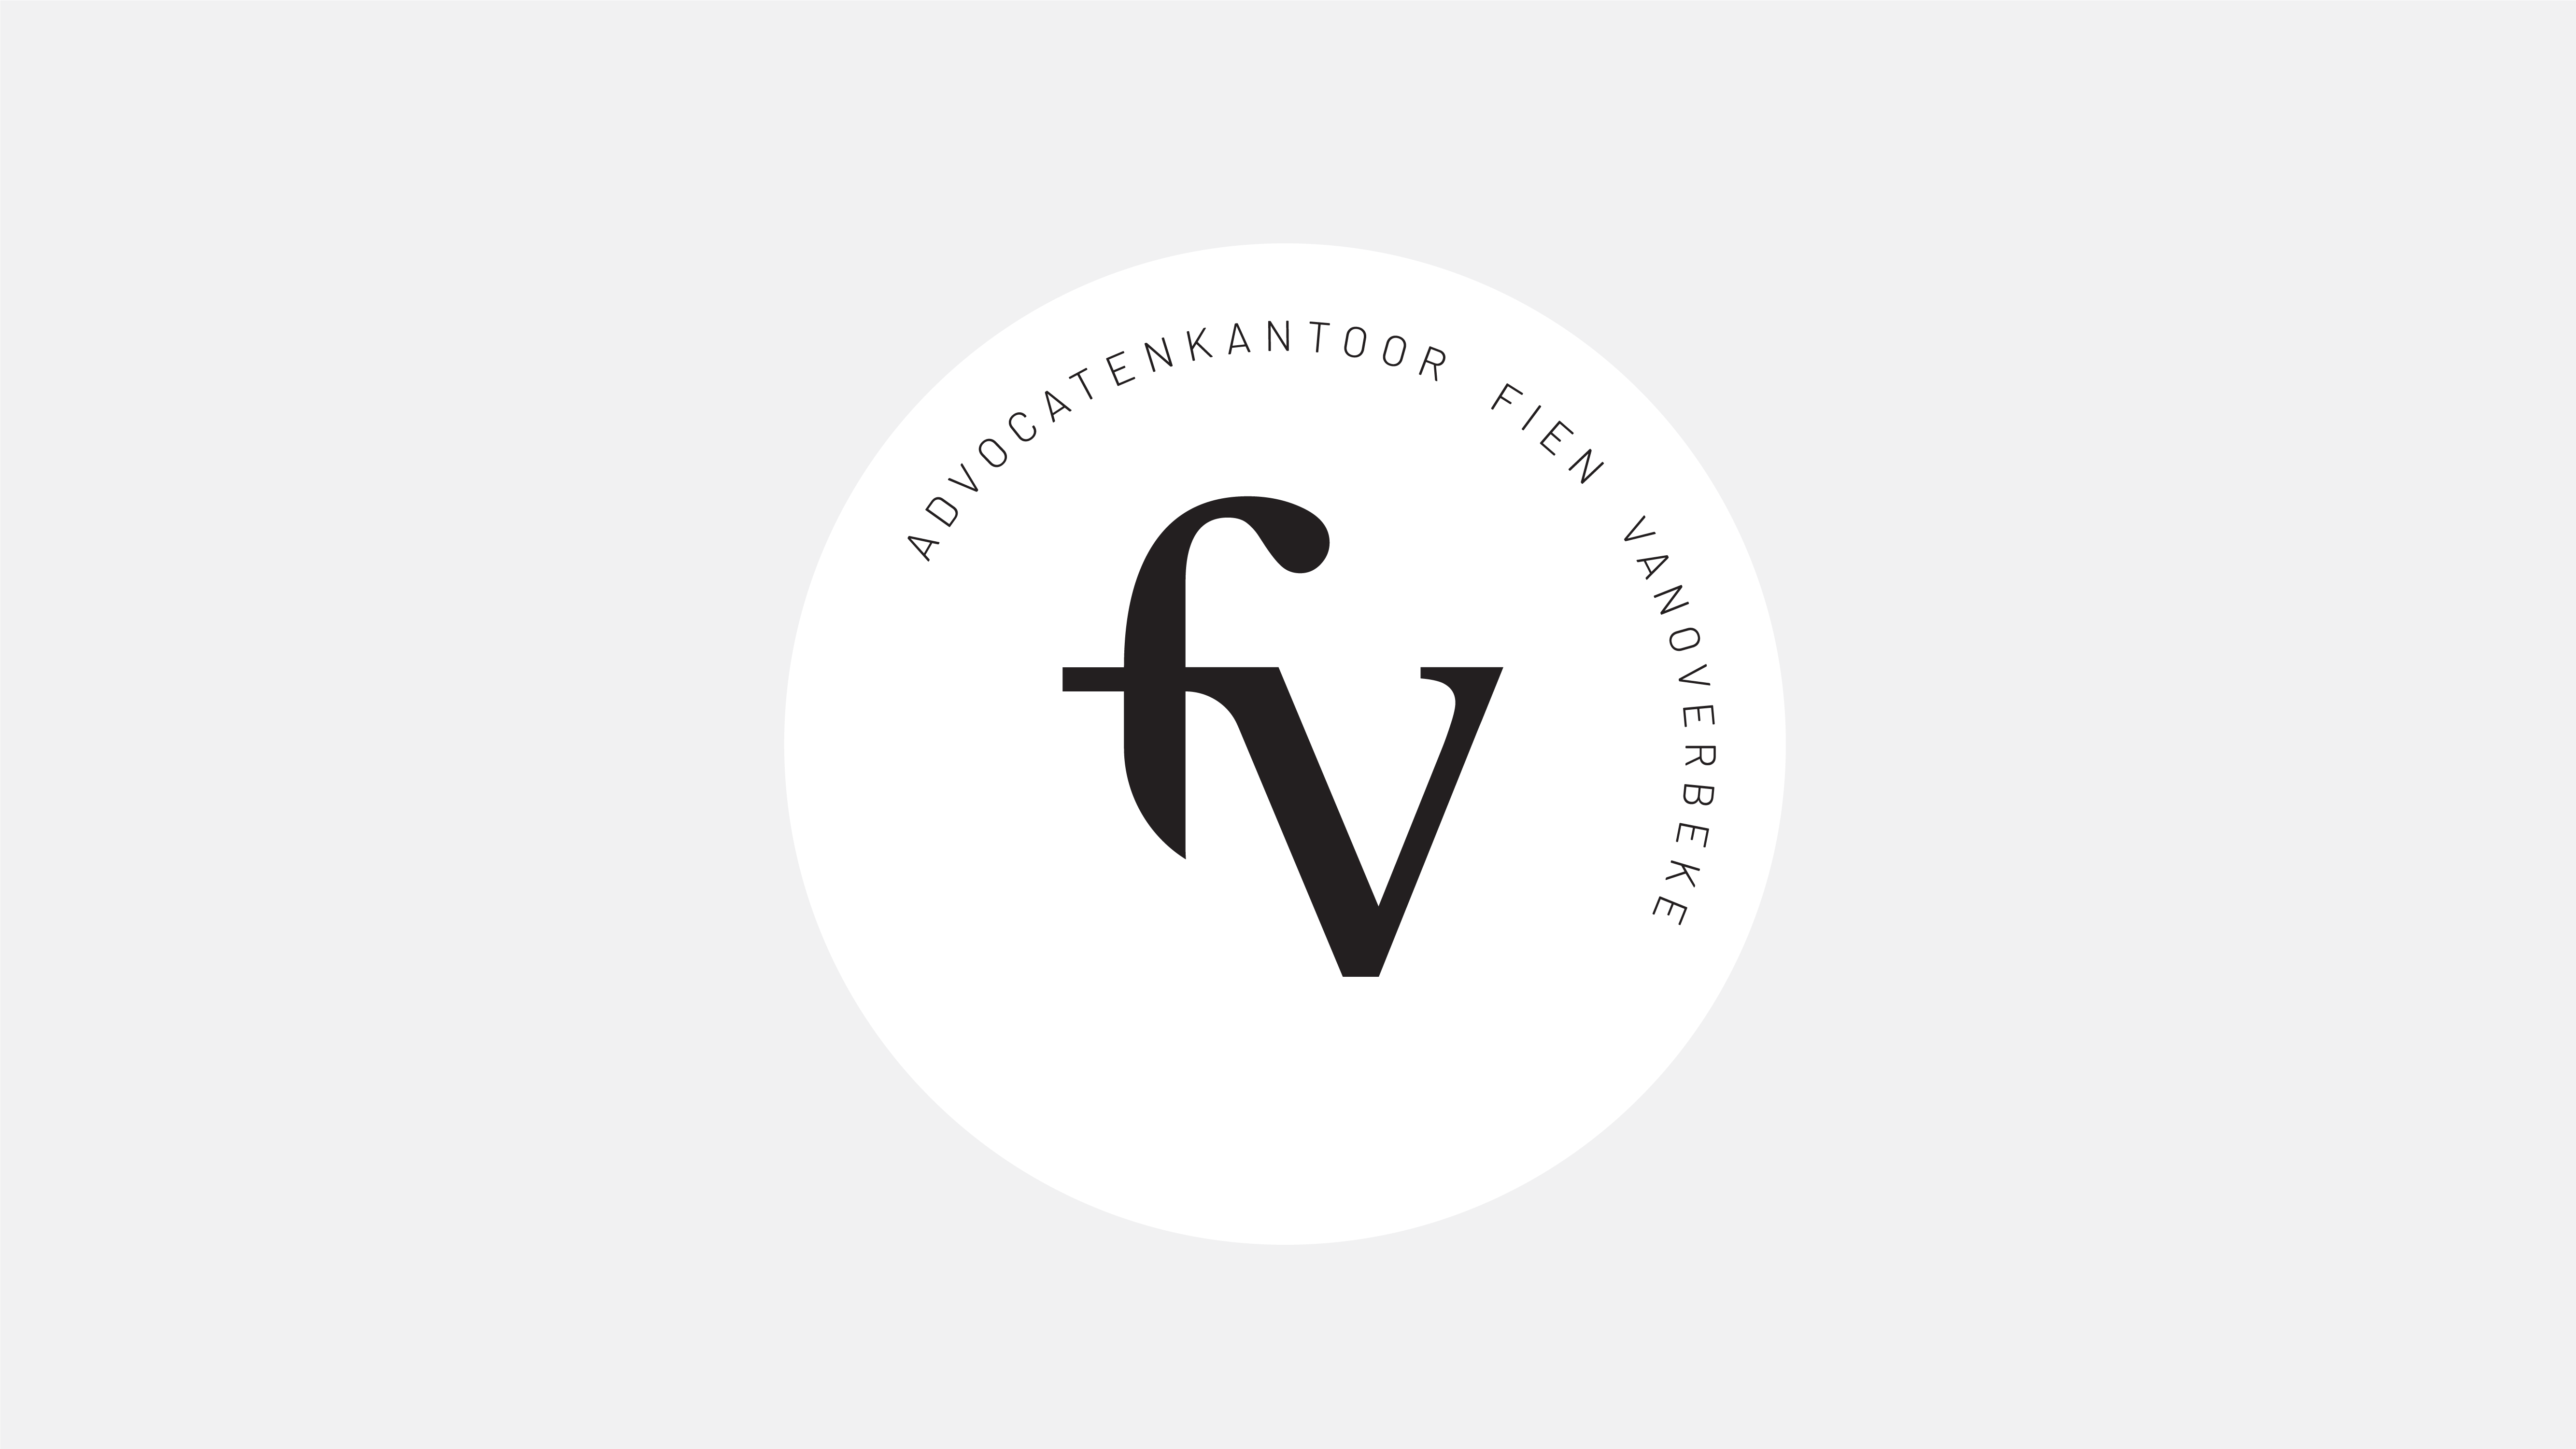 FV-visuals-06